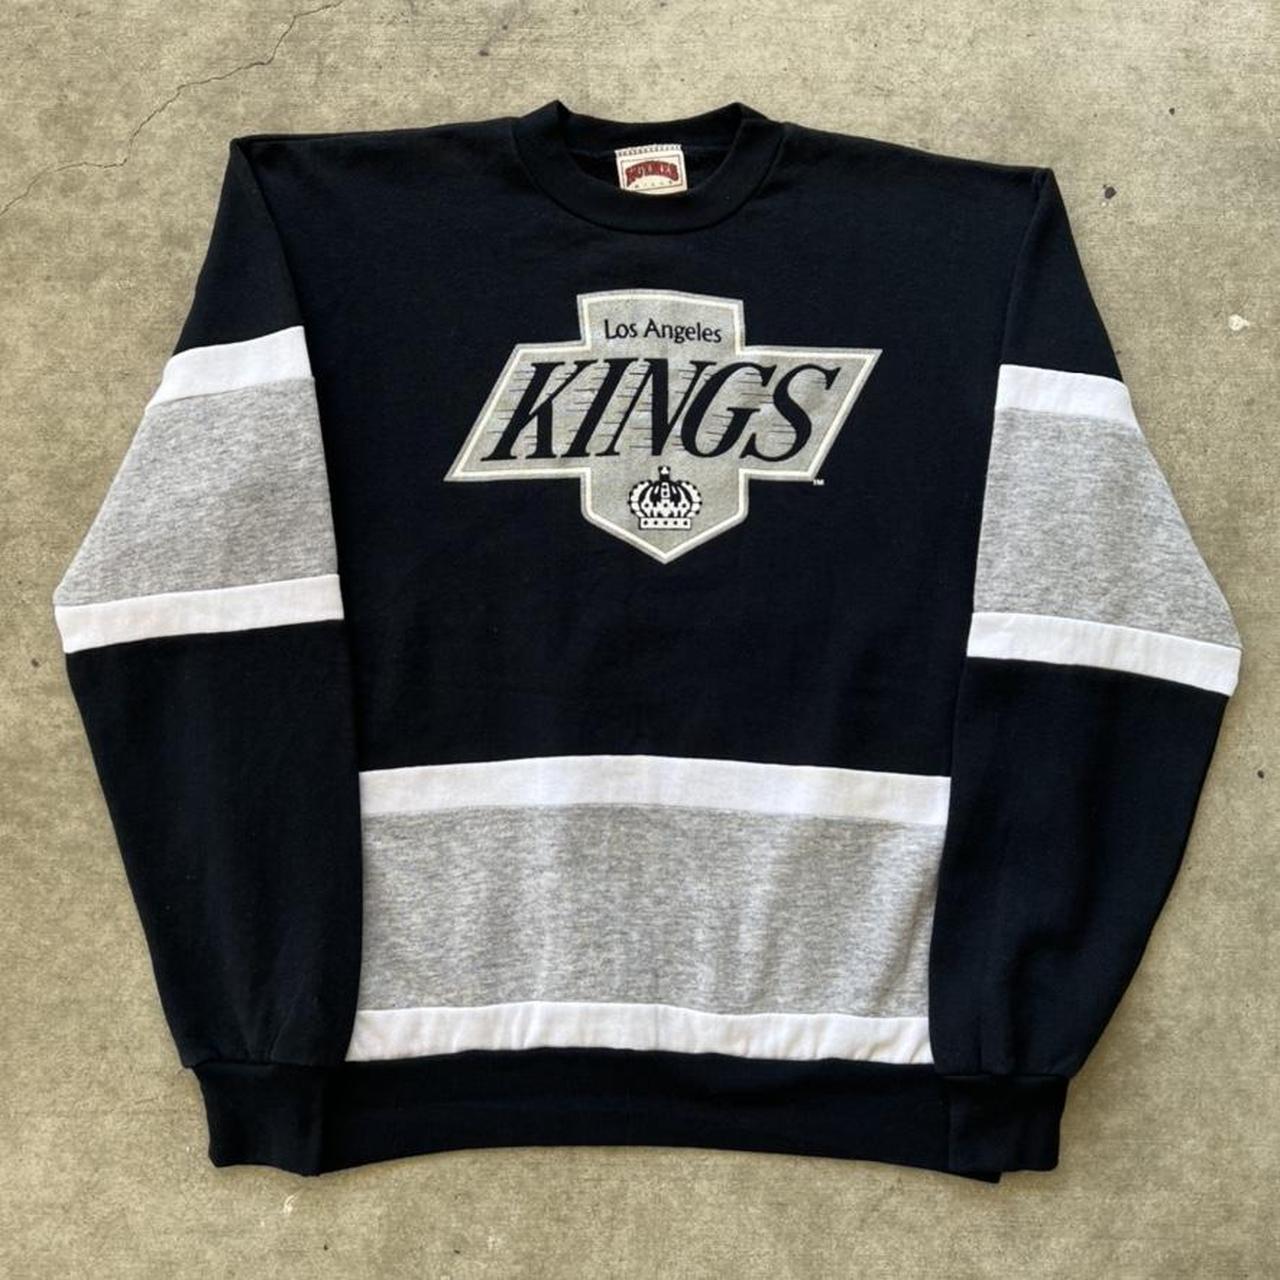 la kings sweater